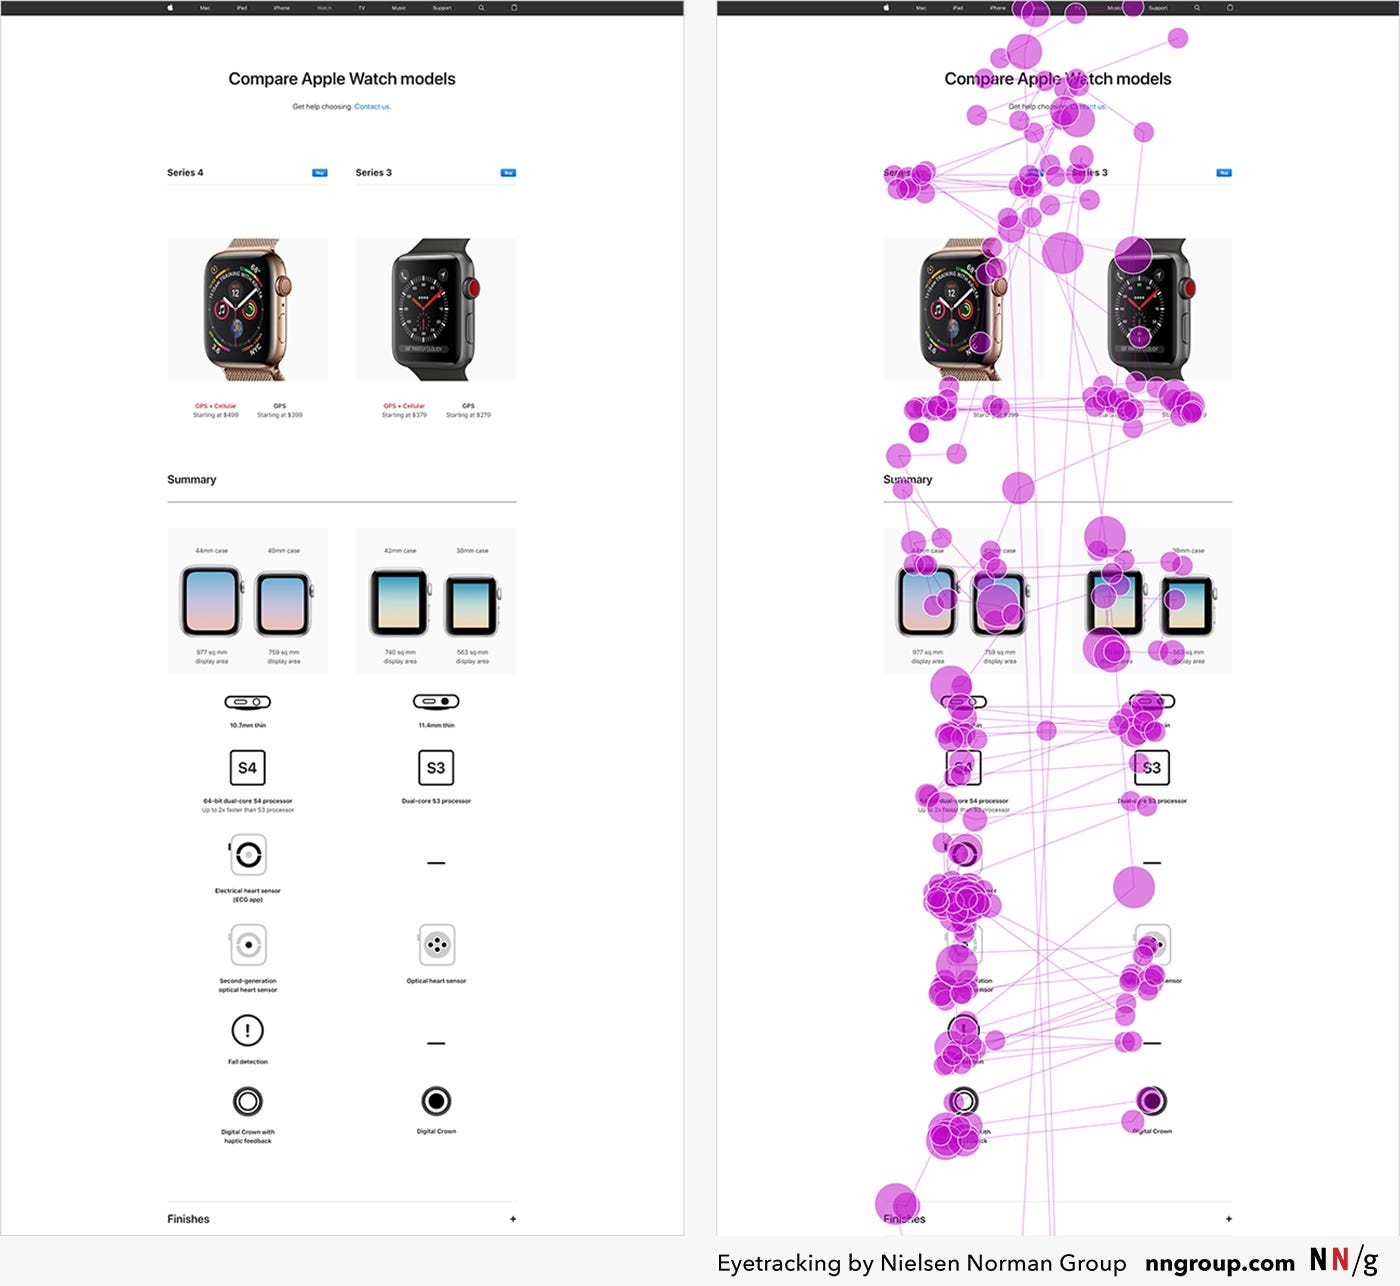 Amostra de eye tracking de usuário vendo uma tela de comparação entre dois modelos de Apple Watch. Os círculos e linhas mostram pontos em que o usuário prestou atenção e desviou o olhar para outro ponto em seguida.